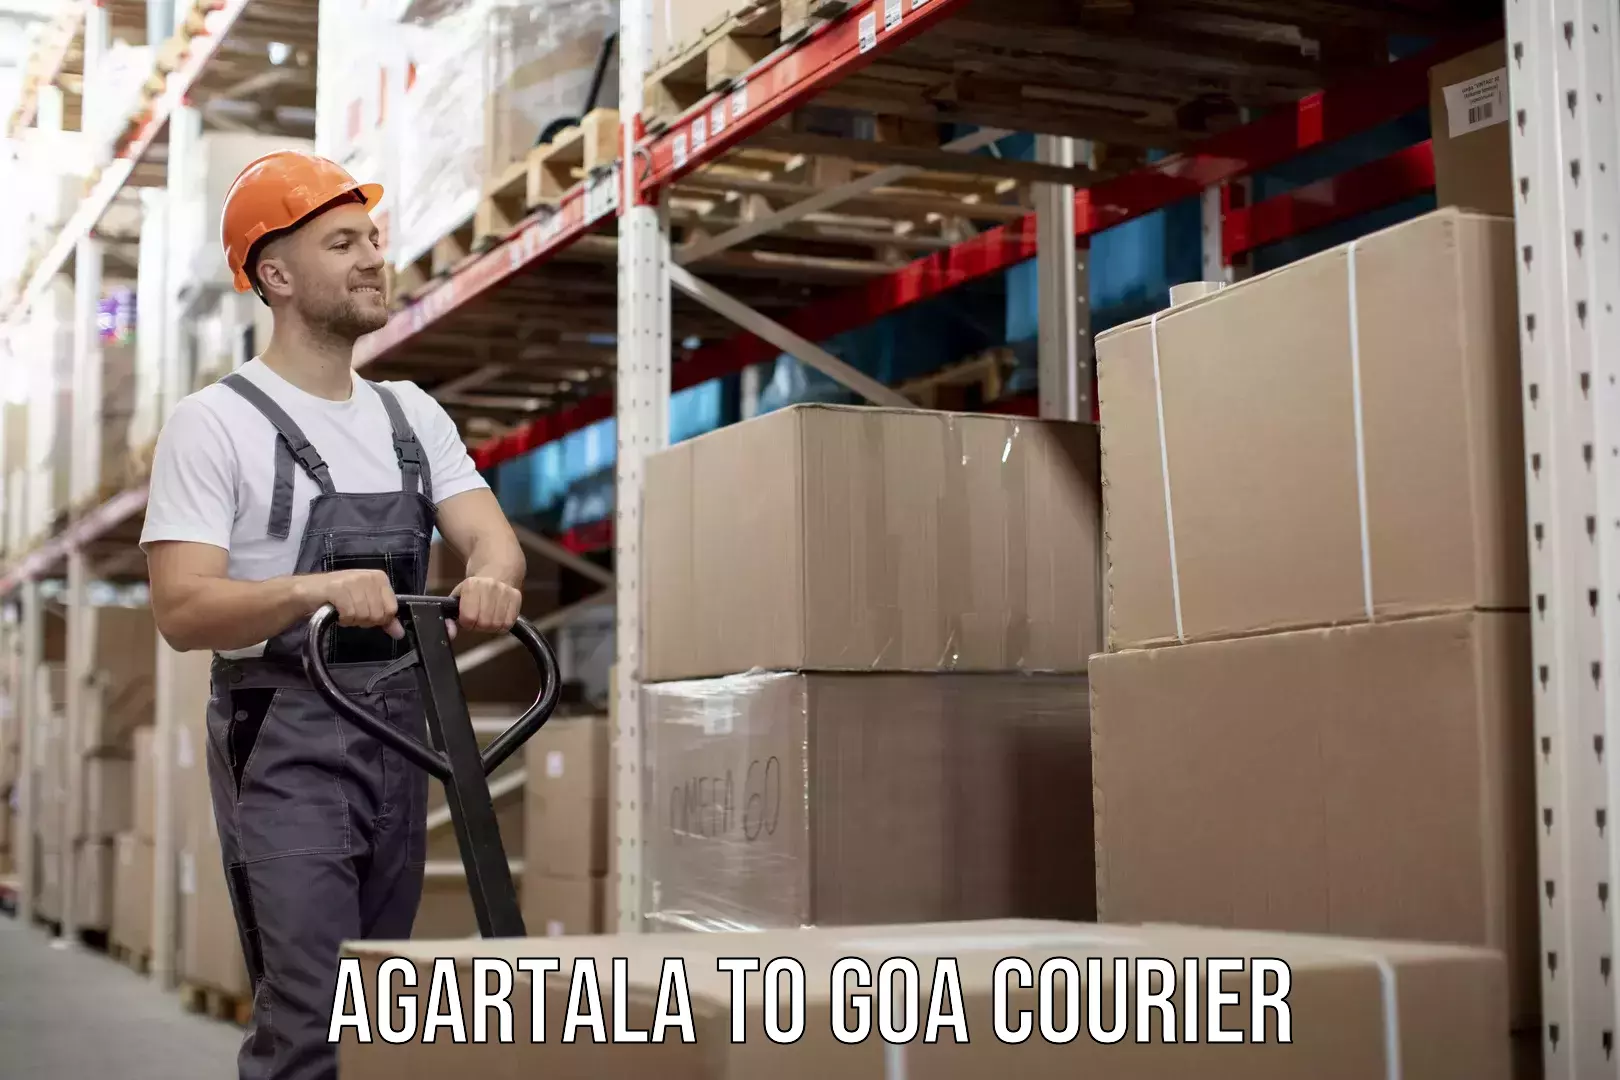 Cargo courier service Agartala to Goa